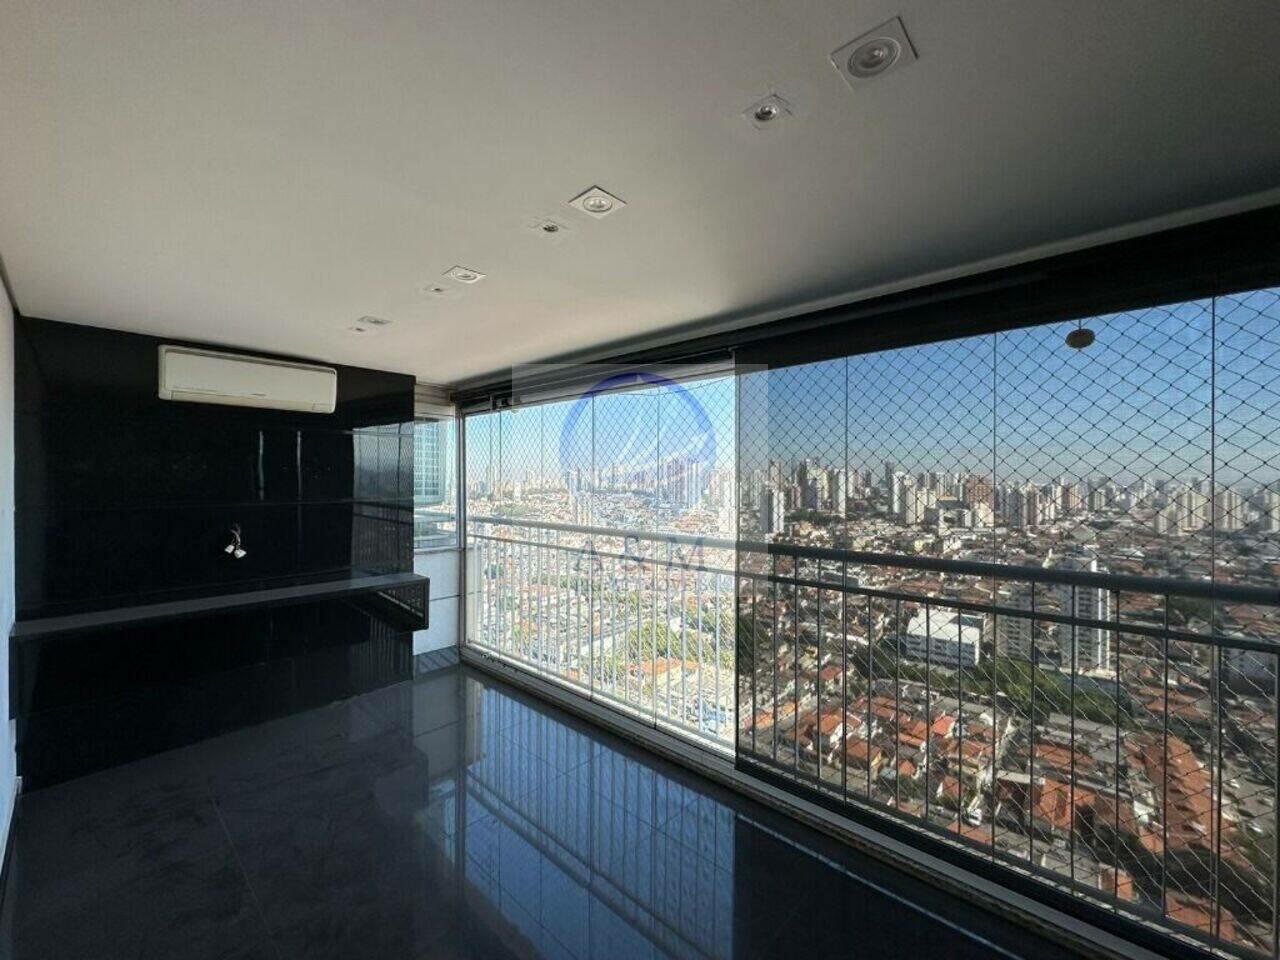 Apartamento Vila Carrão, São Paulo - SP